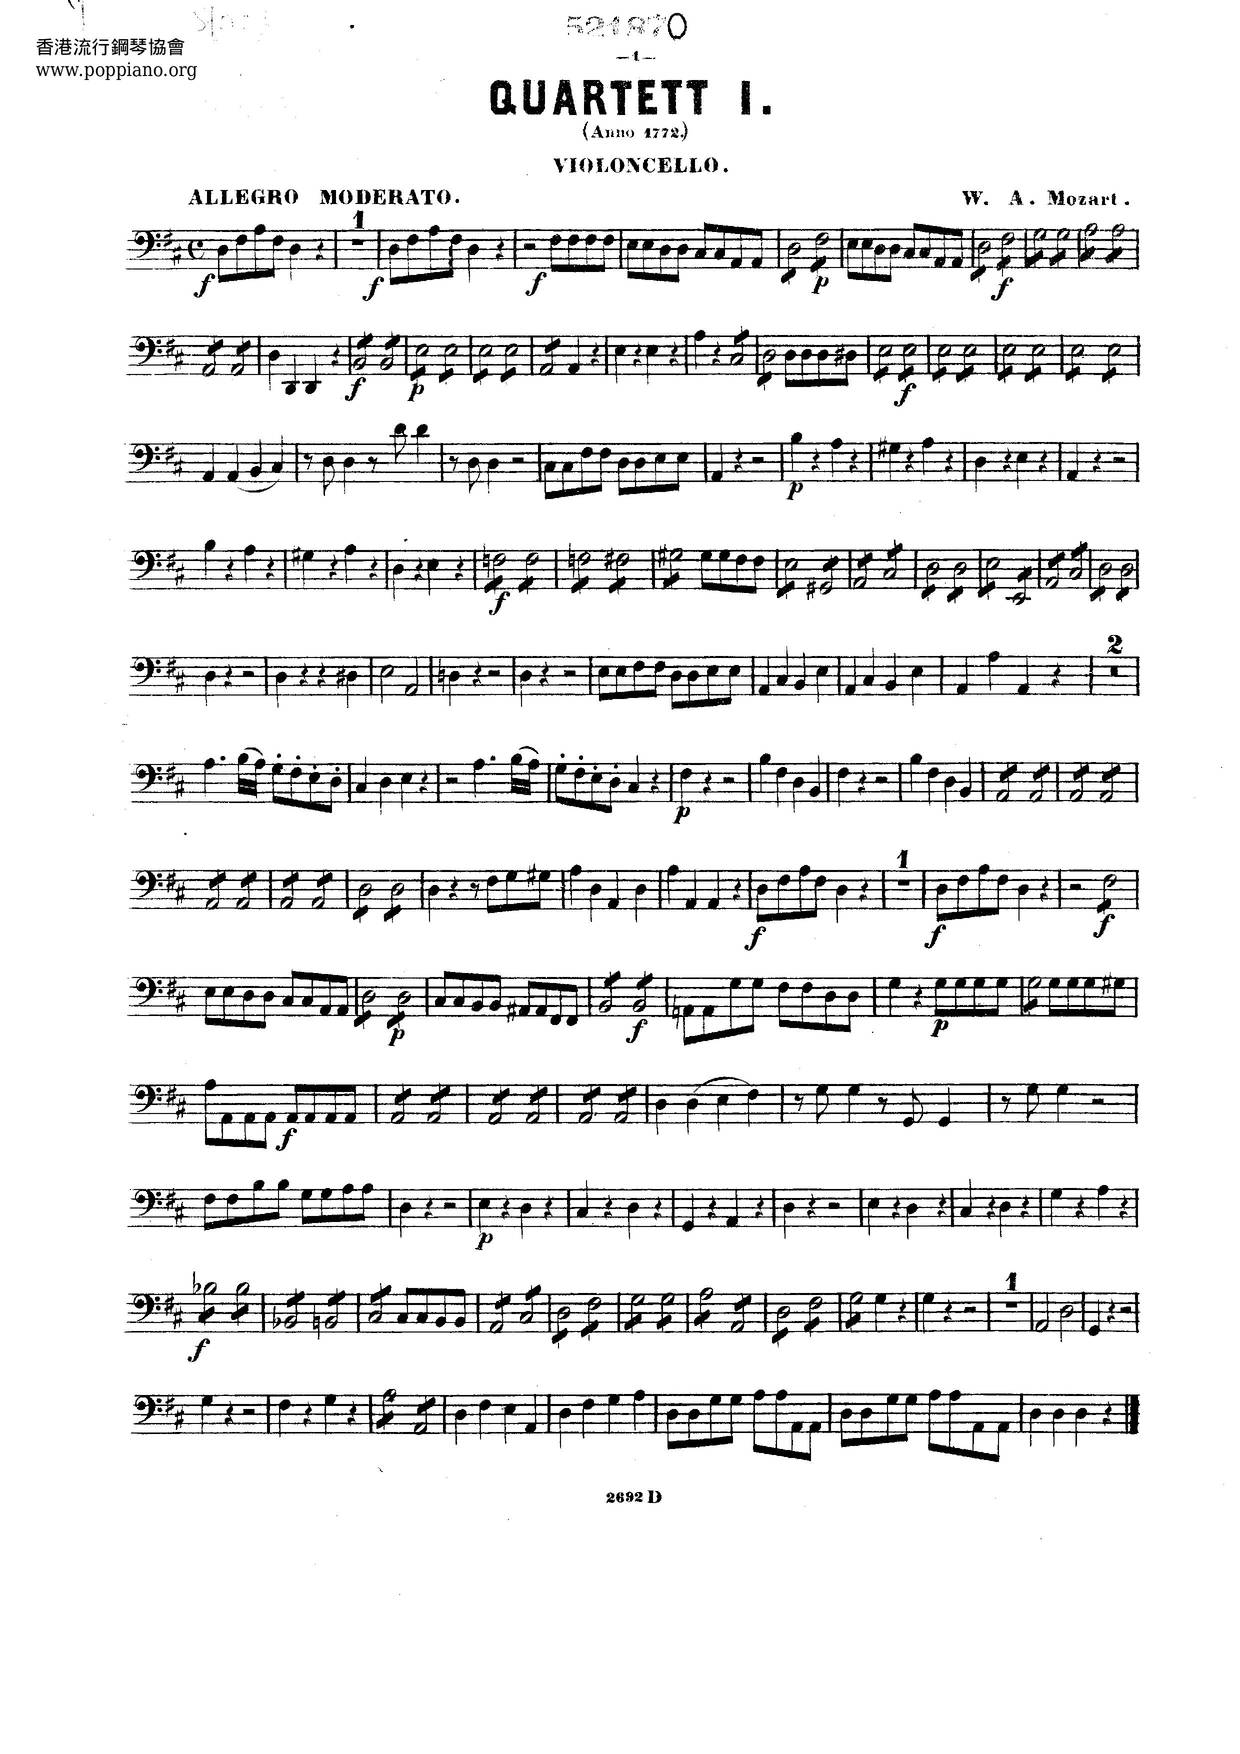 27 Quartets Score